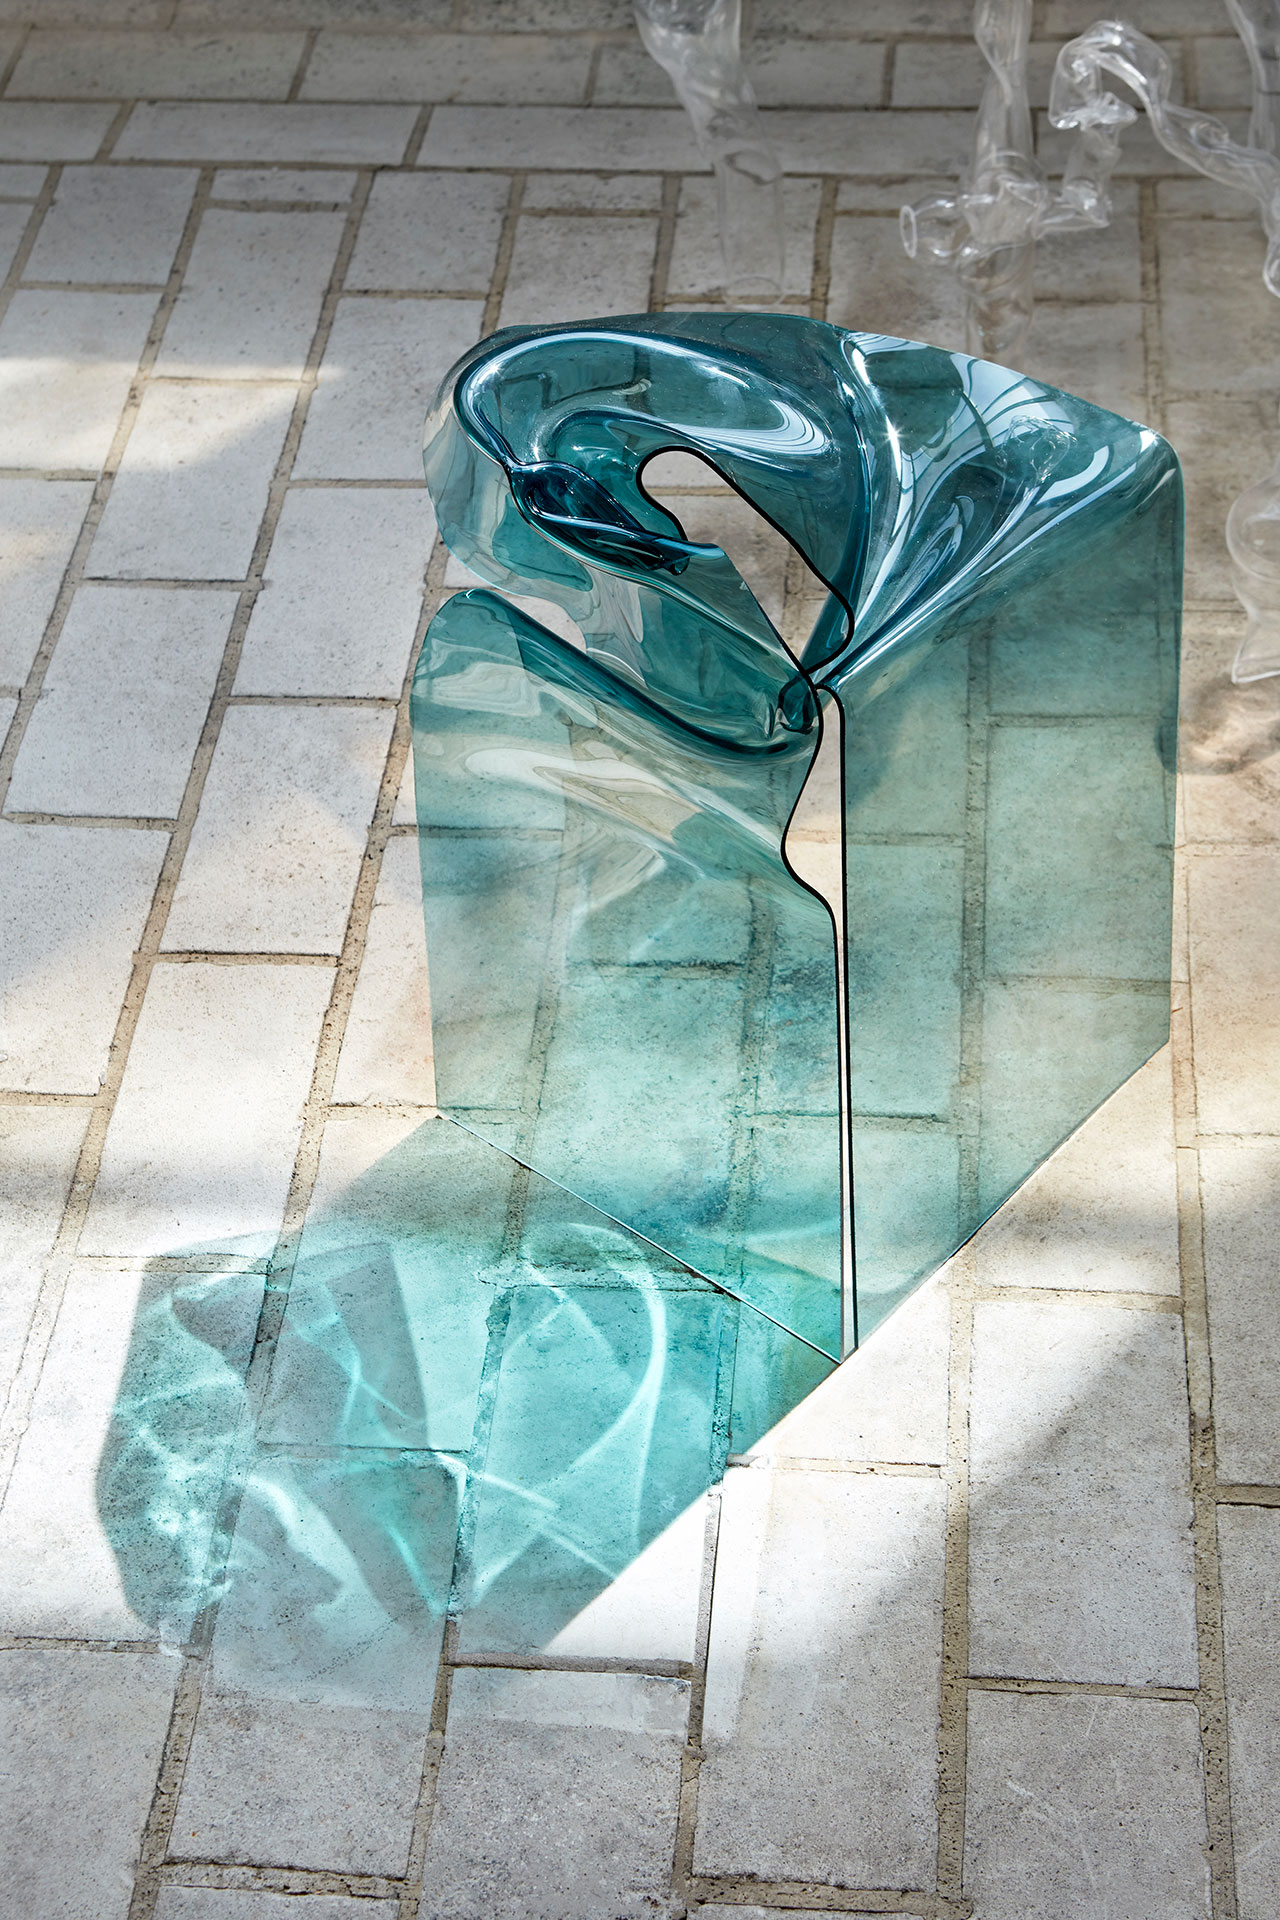 多里安·雷纳德，《扭曲之美》。 “扭曲之美”是一项关于如何通过颠覆性地使用工艺技术改变我们对材料的偏见的研究，从而产生一系列优雅的塑料物品。 ©埃因霍温设计学院。 罗纳德·史密茨摄。